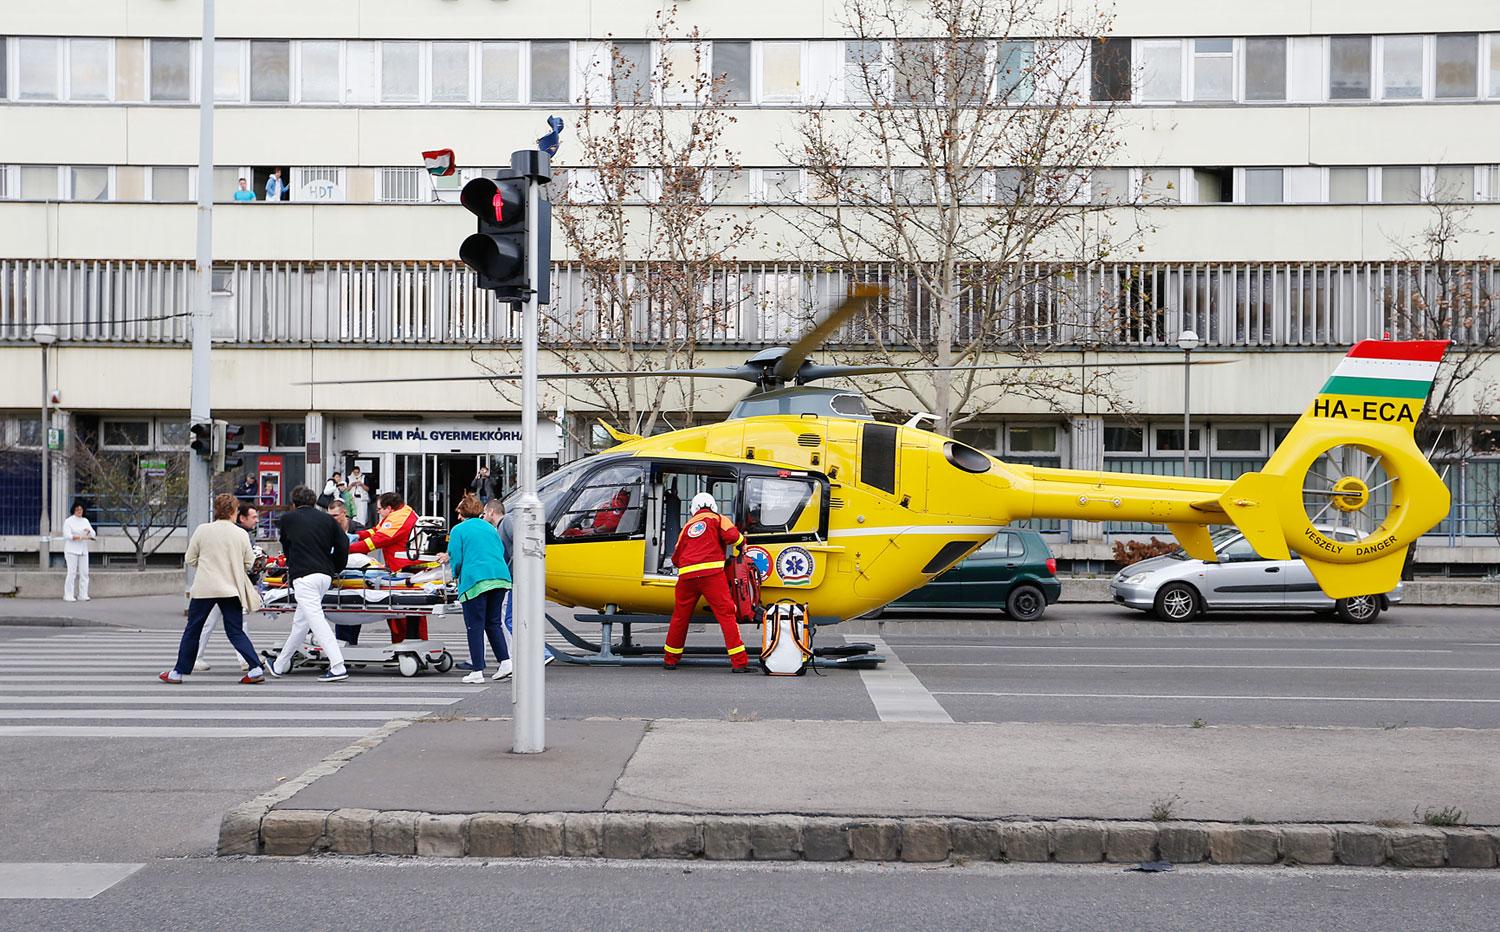 A Heim Pál Gyermekkórháznál a gyorsabb ellátás érdekében többször használják az utcai landolást